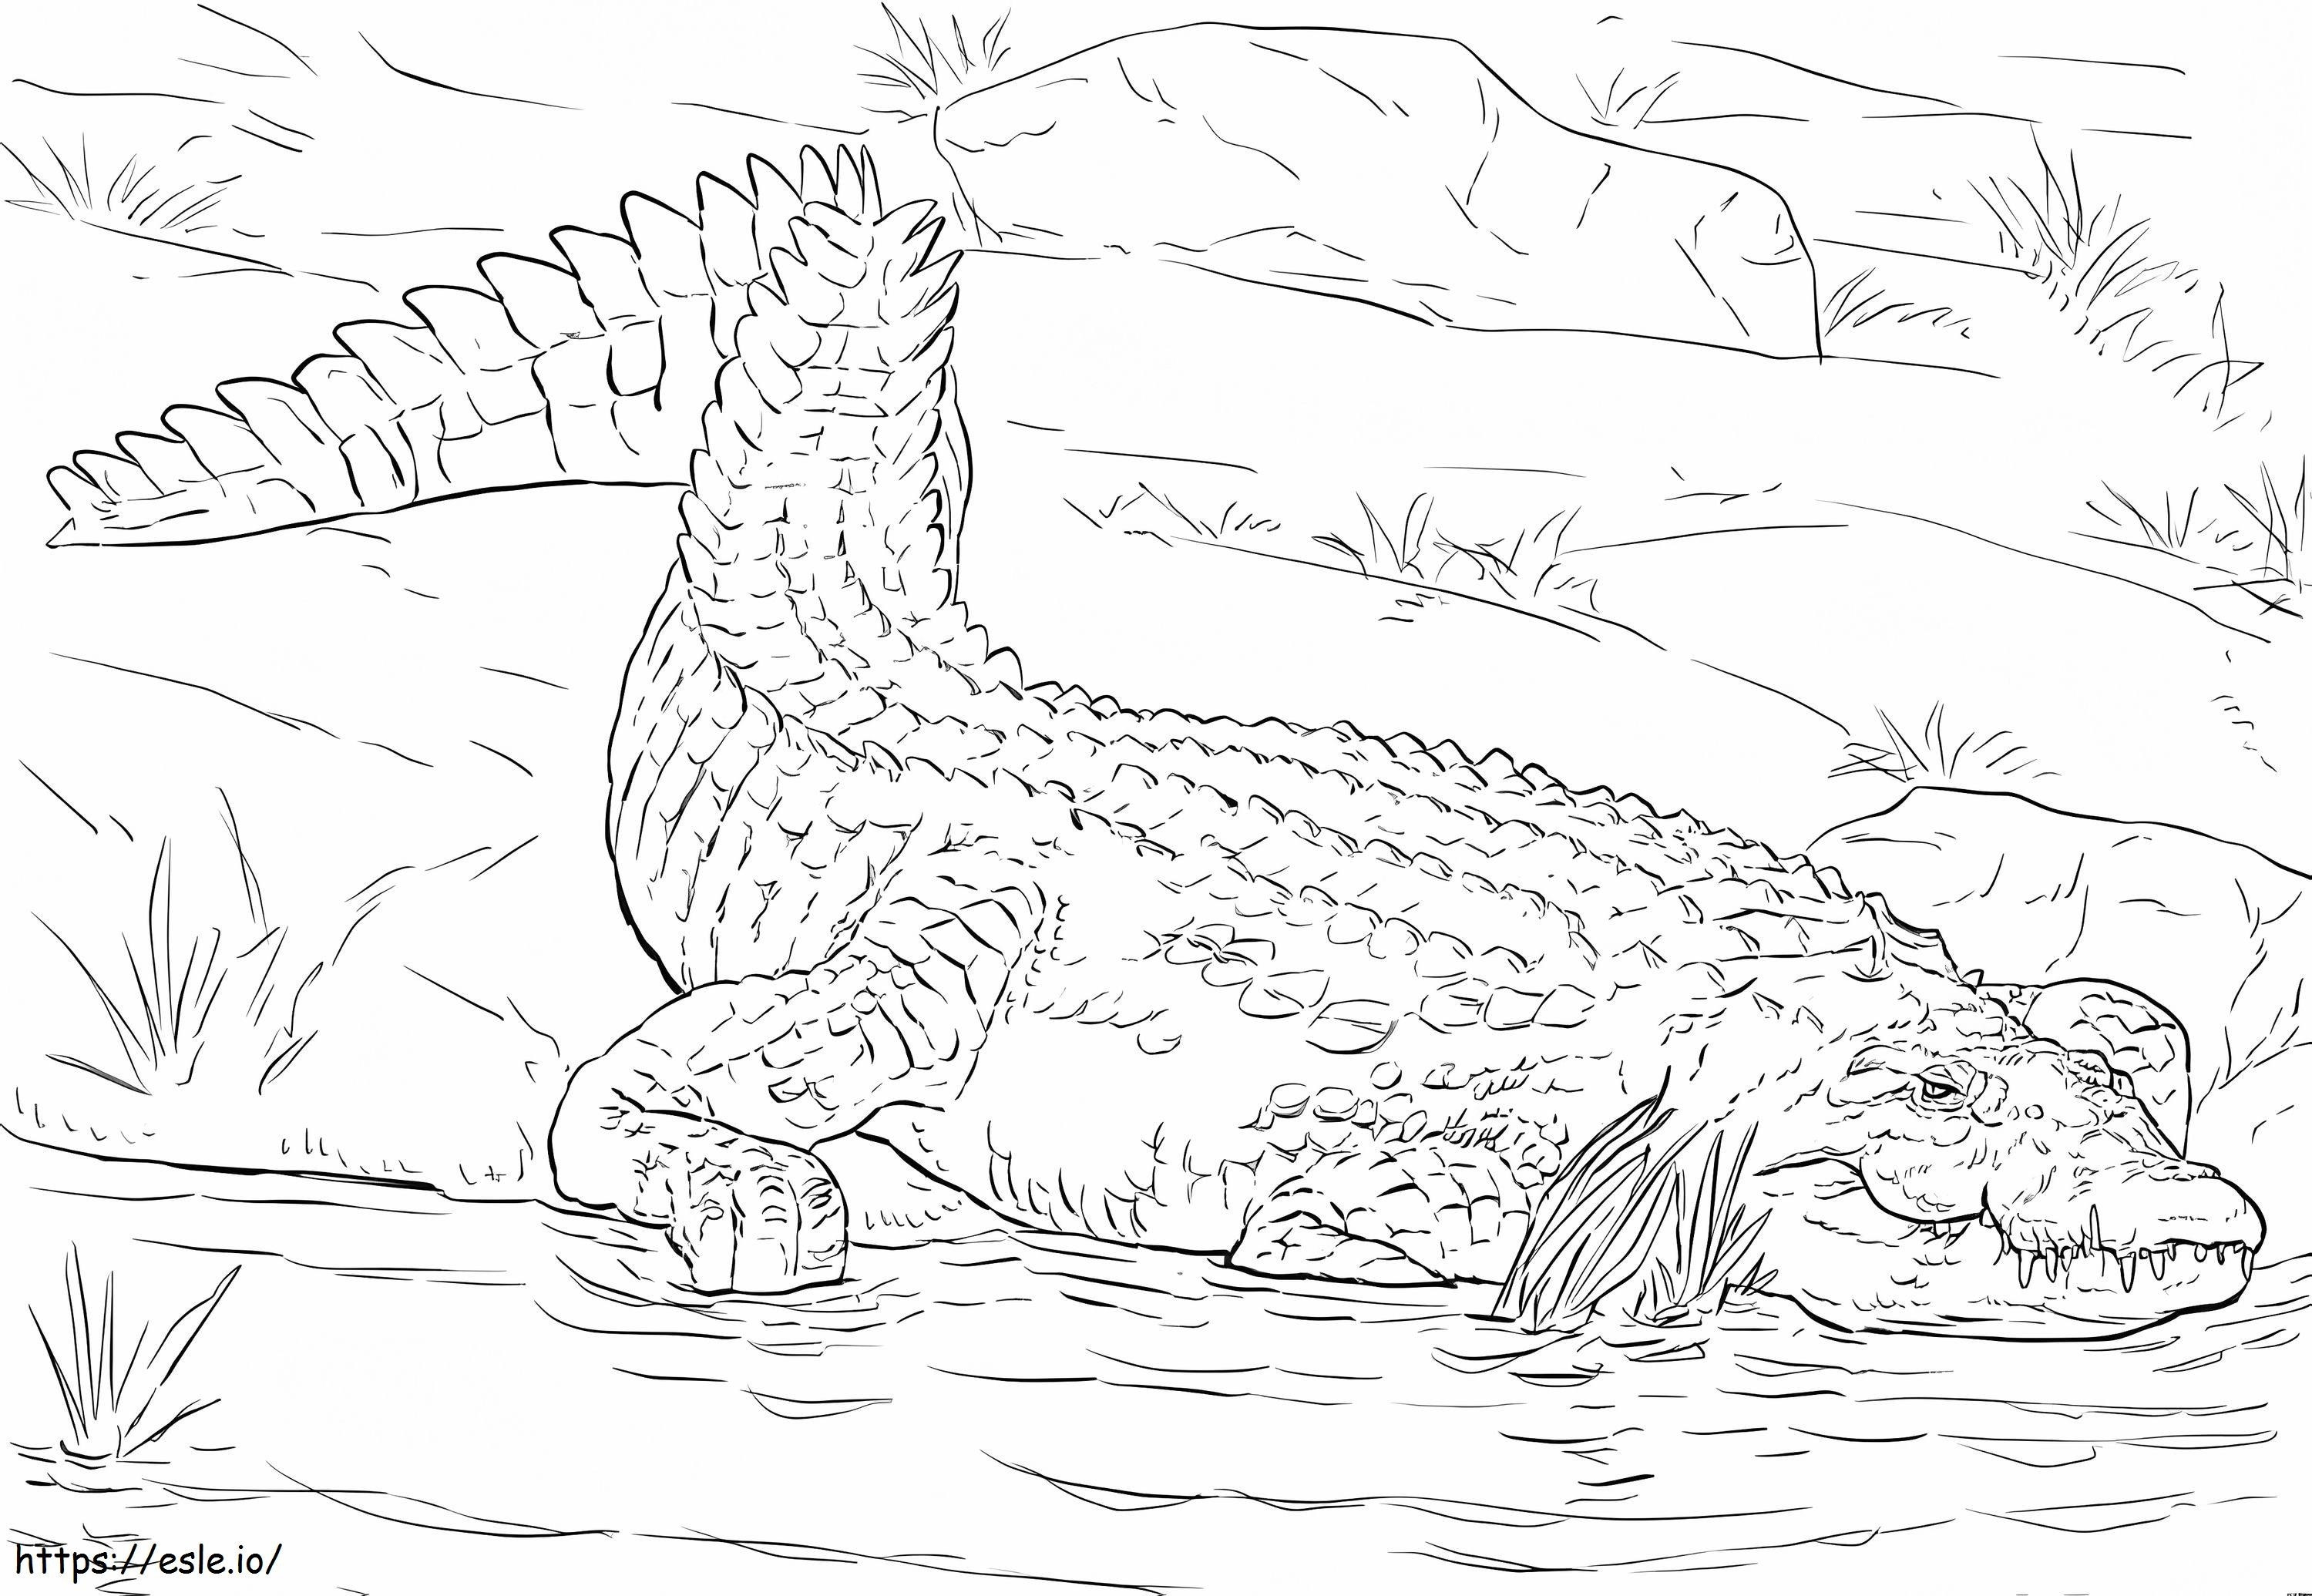 Crocodilo do Nilo realista para colorir